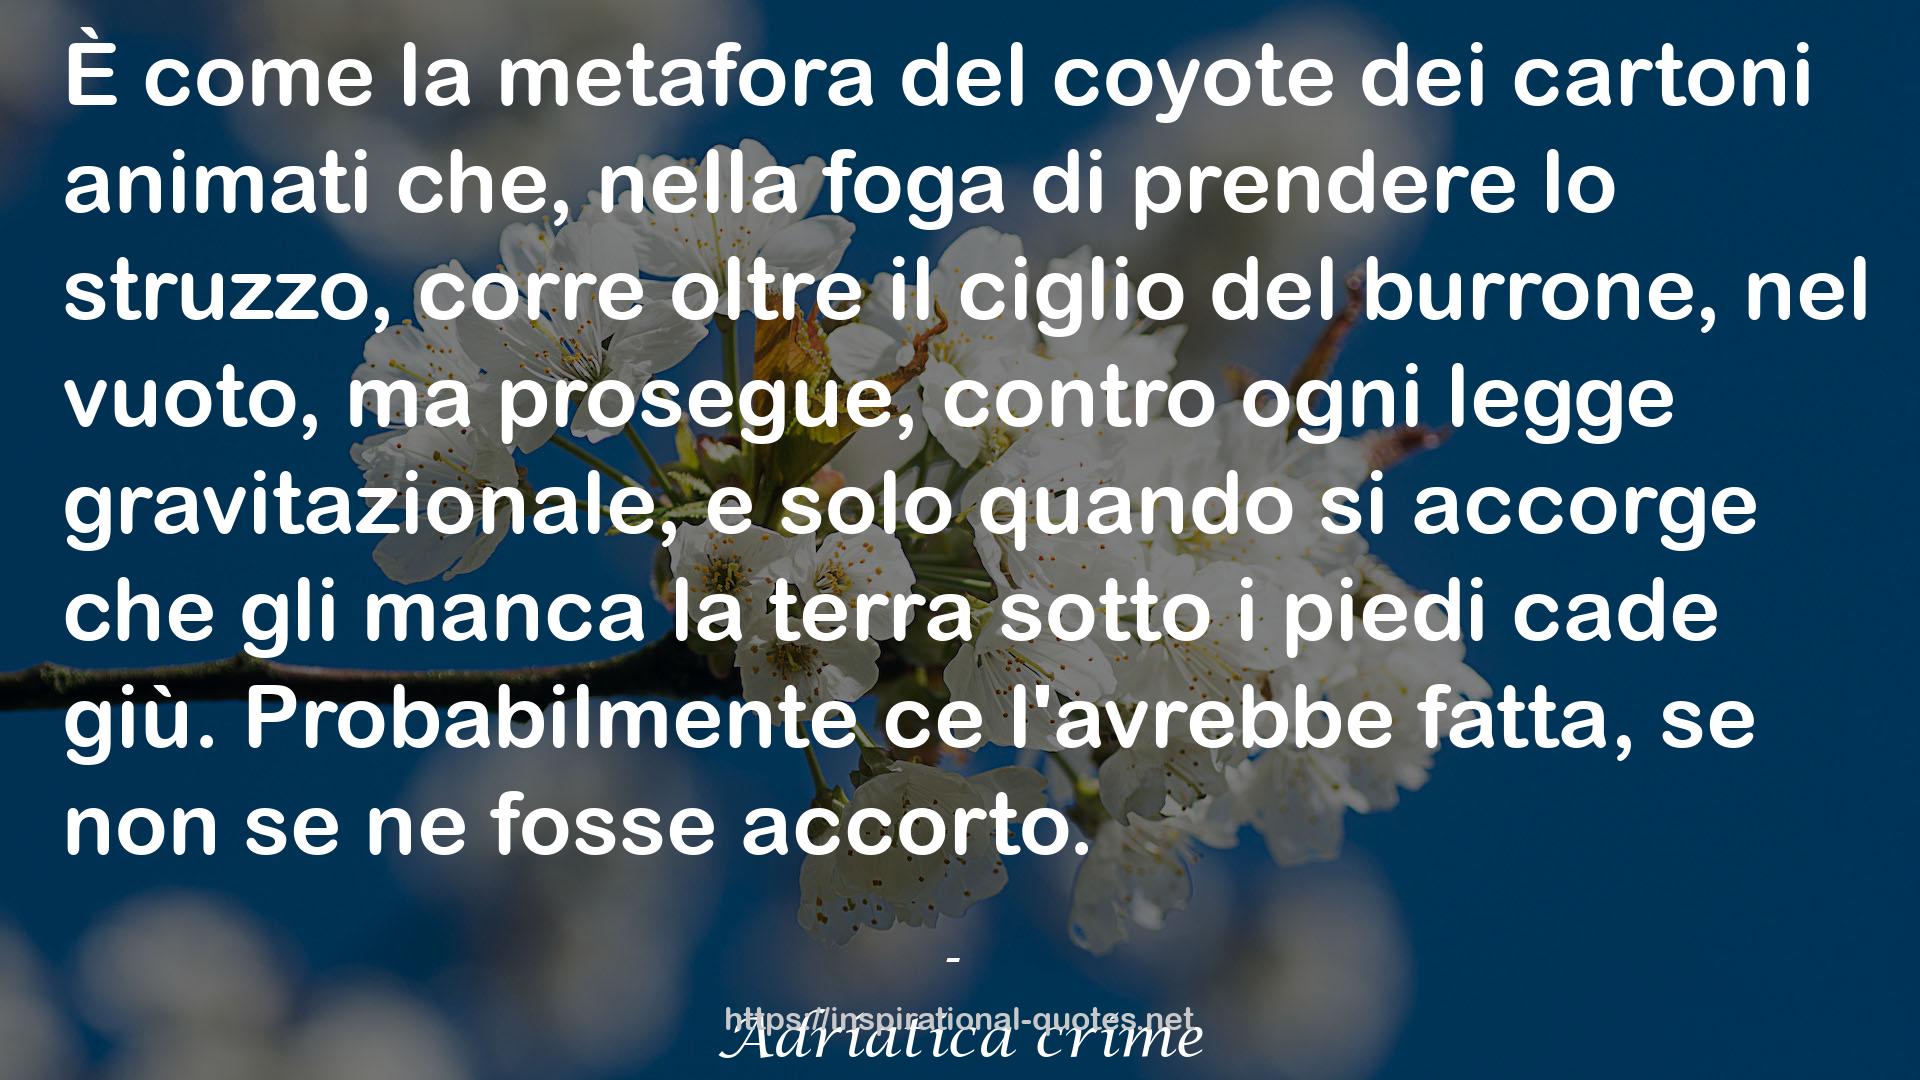 Adriatica crime QUOTES